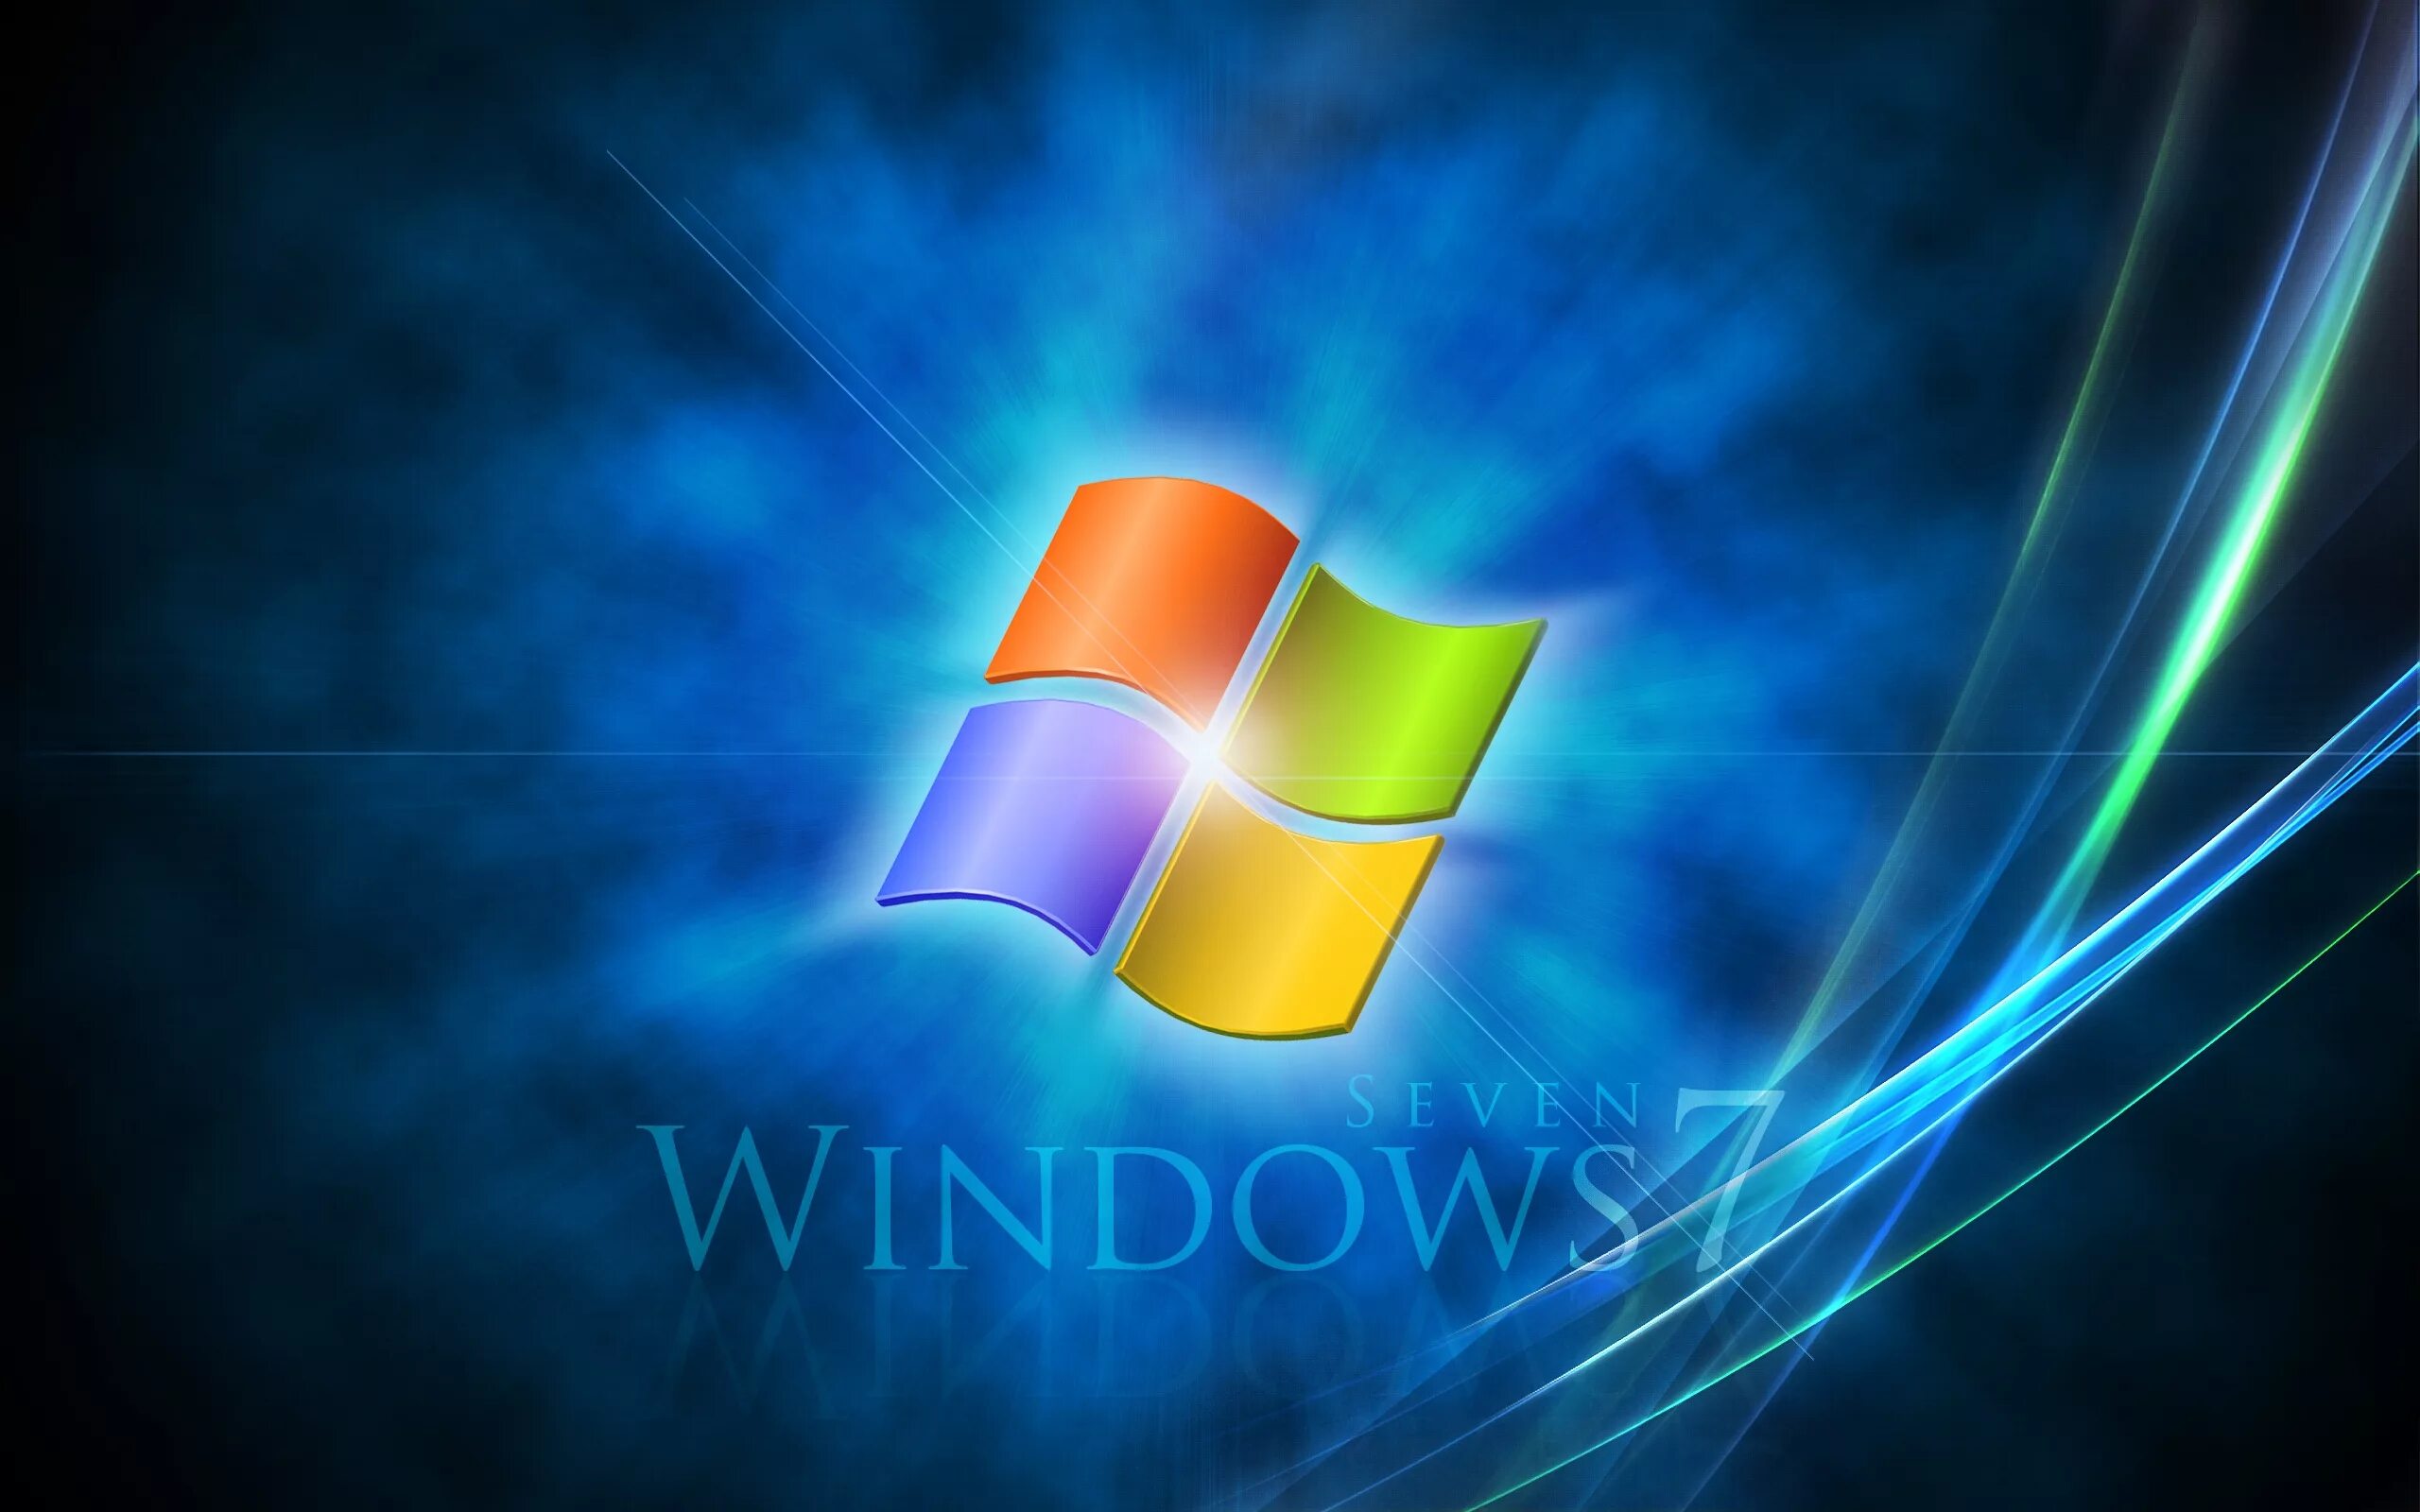 Виндовс 7. Windows 7 рабочий стол. Логотип Windows. Заставка виндовс. Windows семерка